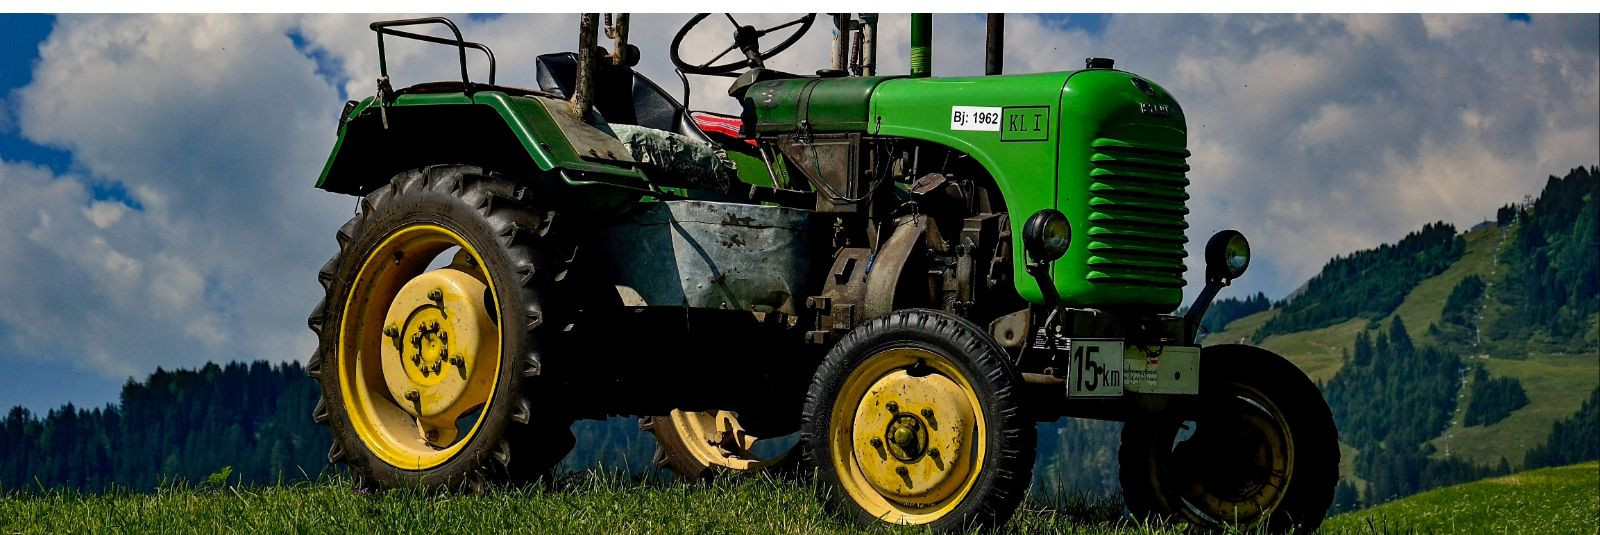 Traktorid on põllumajanduse ja maaelu lahutamatu osa ning nende ...